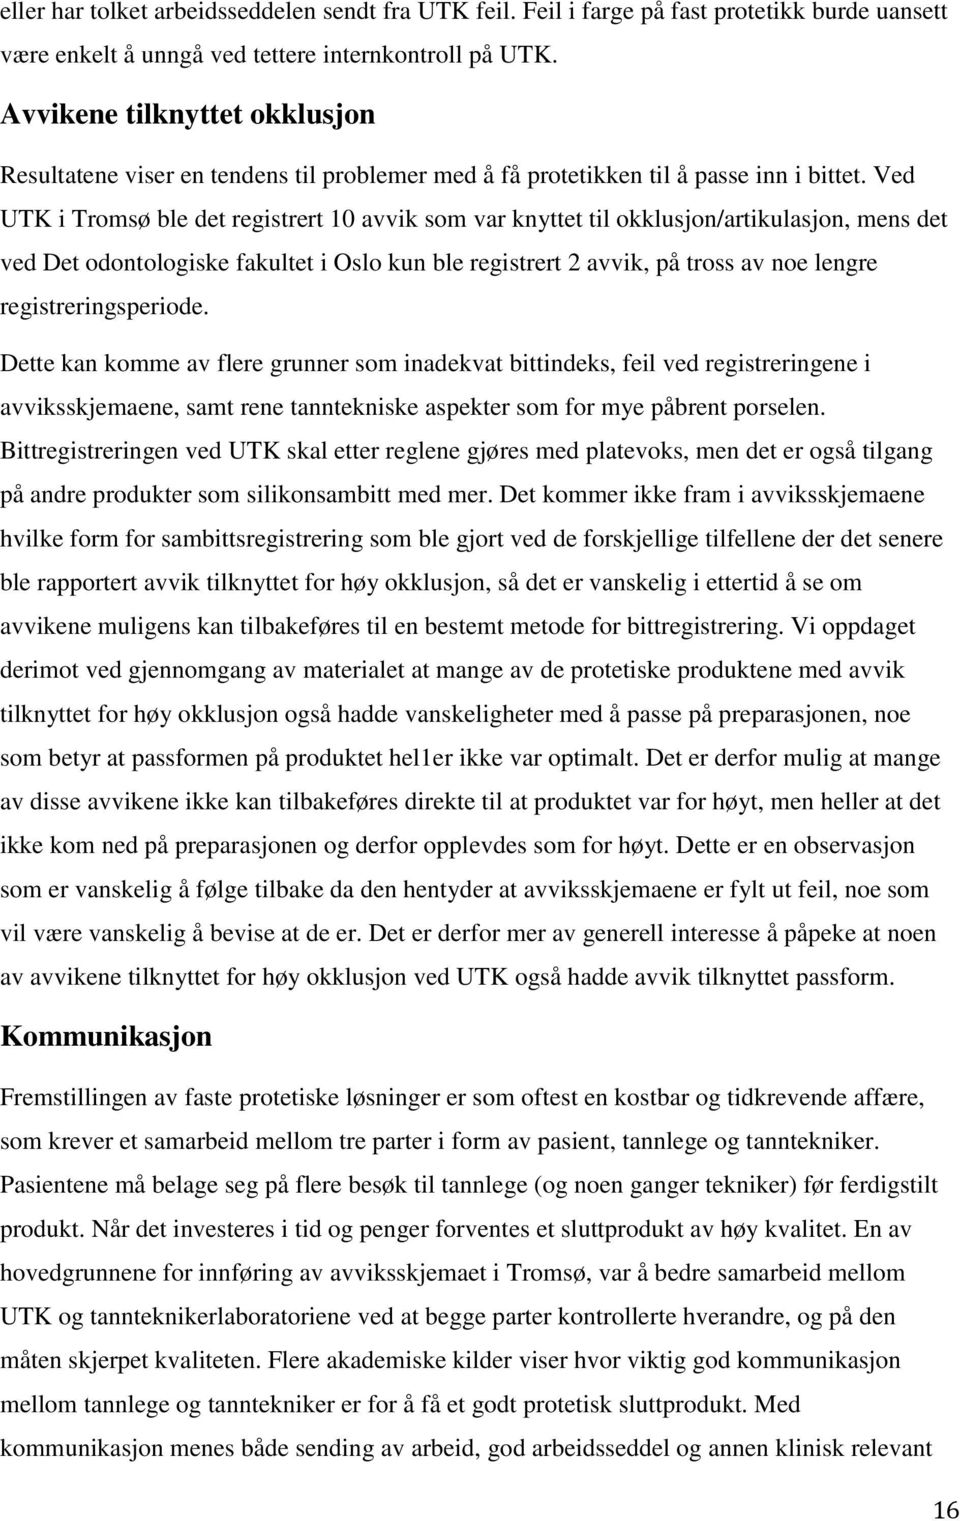 Ved UTK i Tromsø ble det registrert 10 avvik som var knyttet til okklusjon/artikulasjon, mens det ved Det odontologiske fakultet i Oslo kun ble registrert 2 avvik, på tross av noe lengre